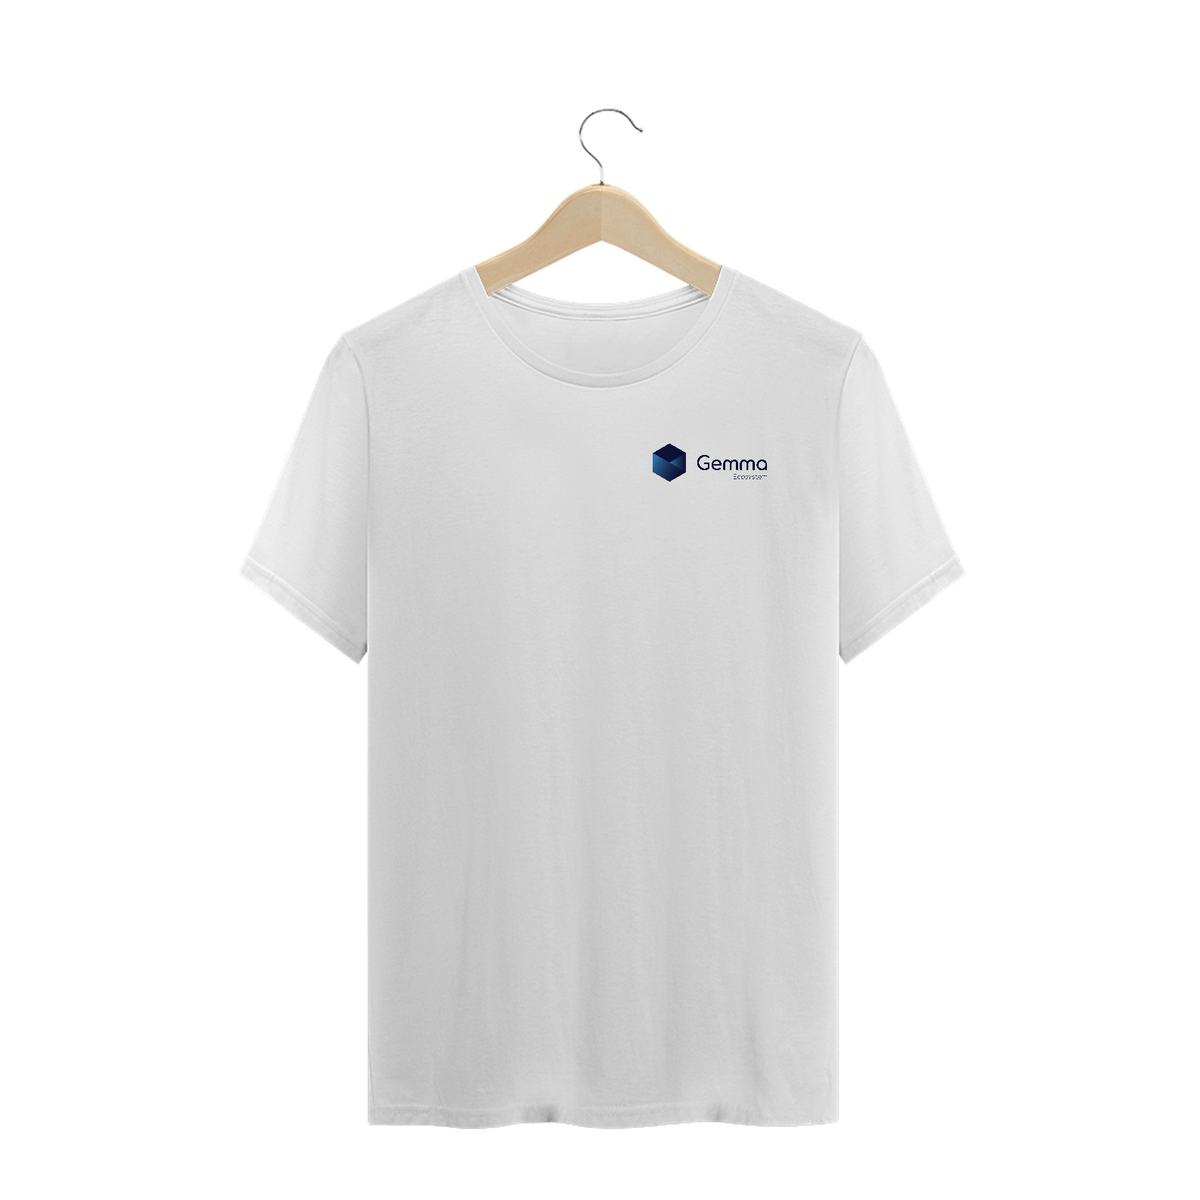 Nome do produto: Criptos - Camisa Gemma Eco